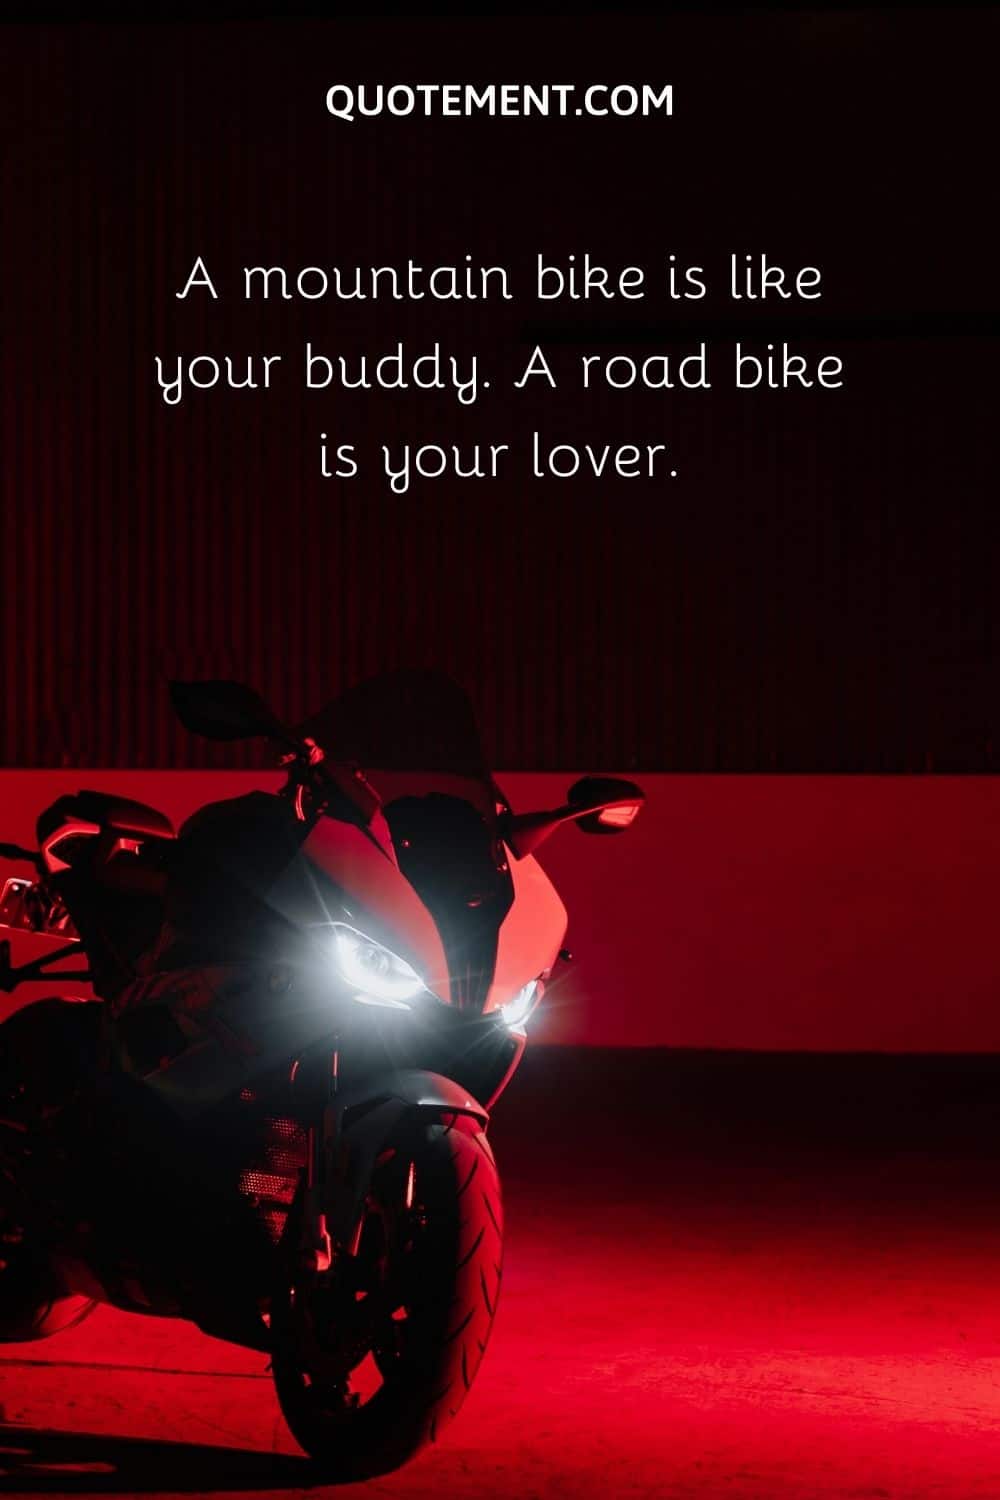 A mountain bike is like your buddy.